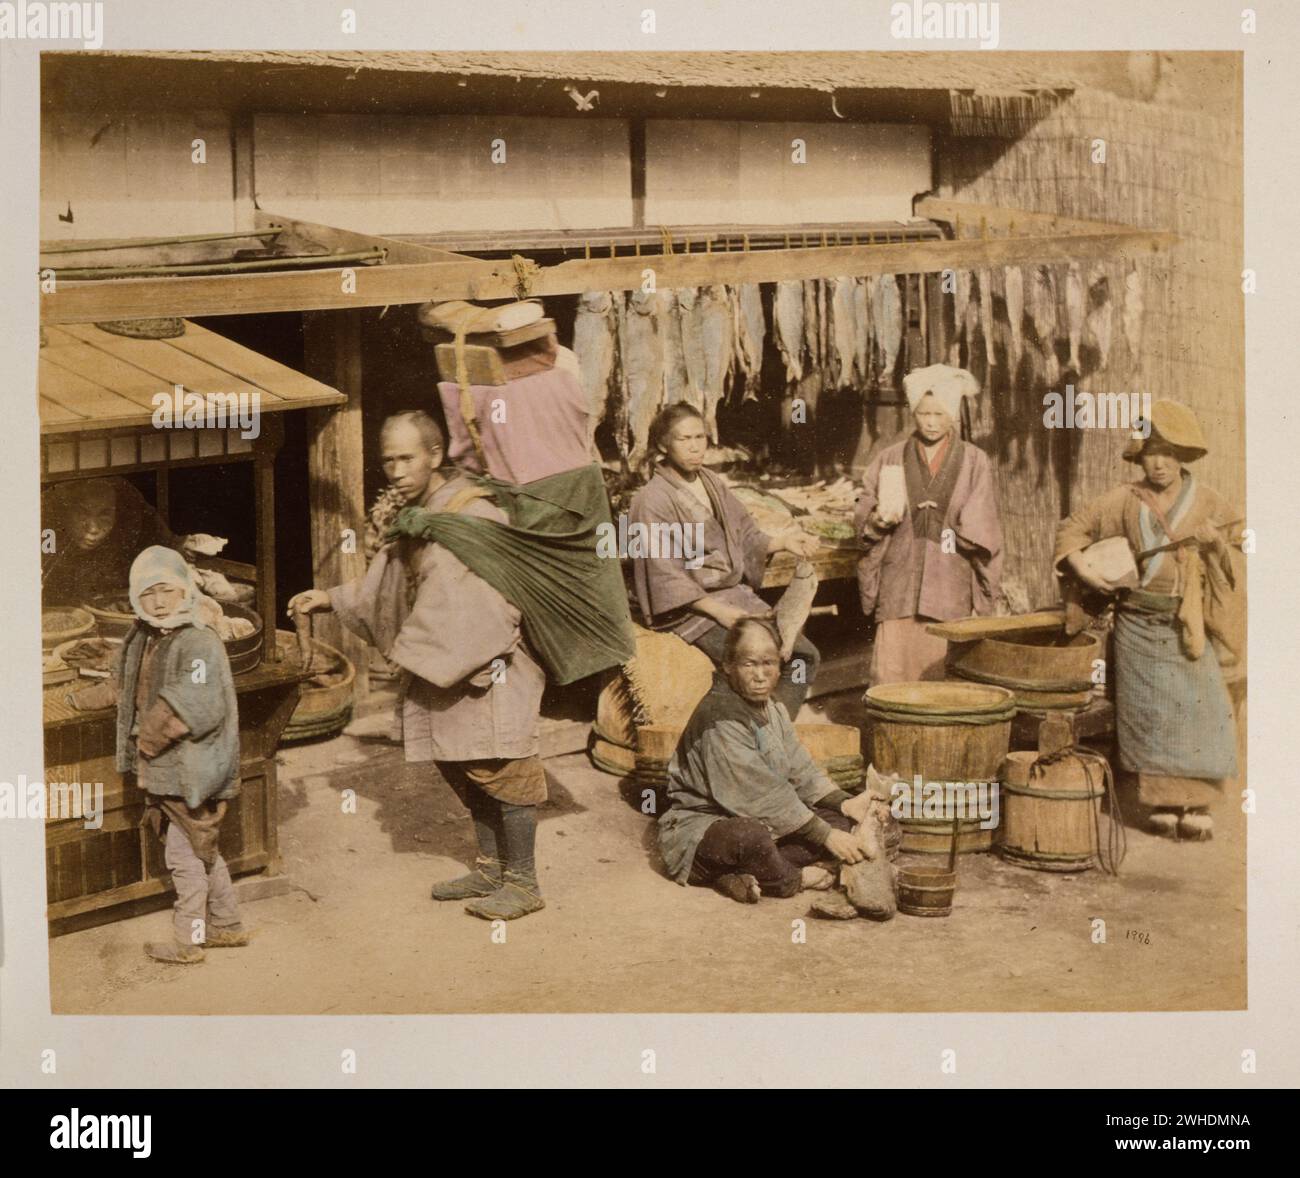 Außenansicht des Fischmarktes mit mehreren Personen, Einkäufern und Händlern, die Fische halten, auch ein Portier mit großem Bündel auf dem Rücken, und eine Frau, die Instrument spielt... Japan handkoloriert mit Aquarell-Fotografie um die 1870er Jahre Stockfoto